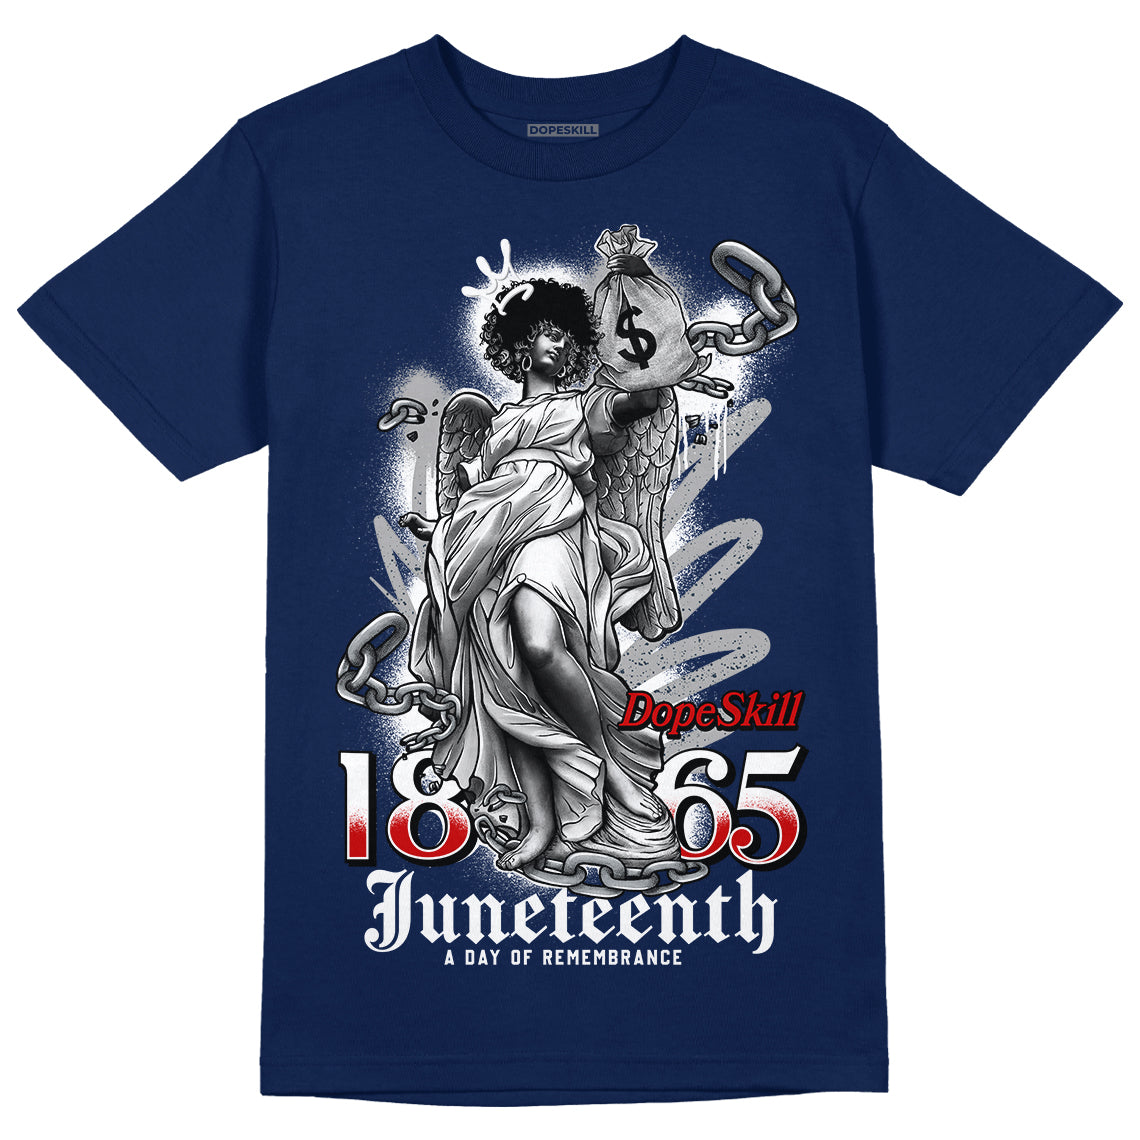 Midnight Navy 4s DopeSkill Midnight Navy T-shirt Juneteenth Graphic